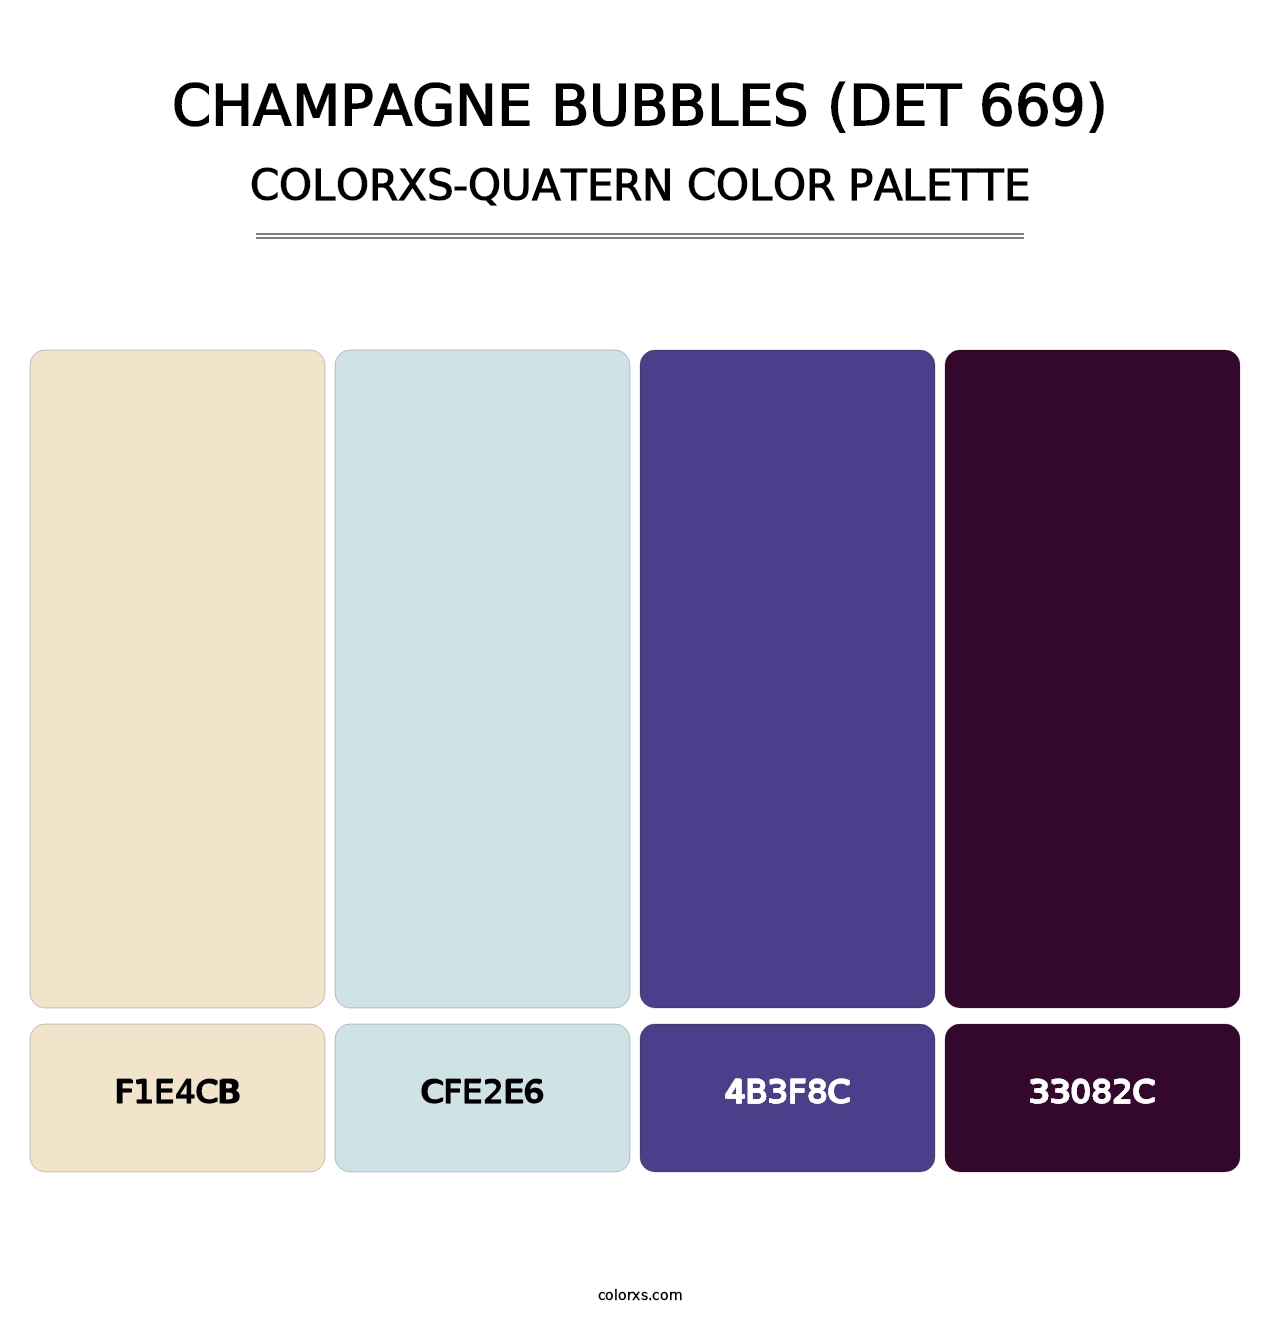 Champagne Bubbles (DET 669) - Colorxs Quatern Palette